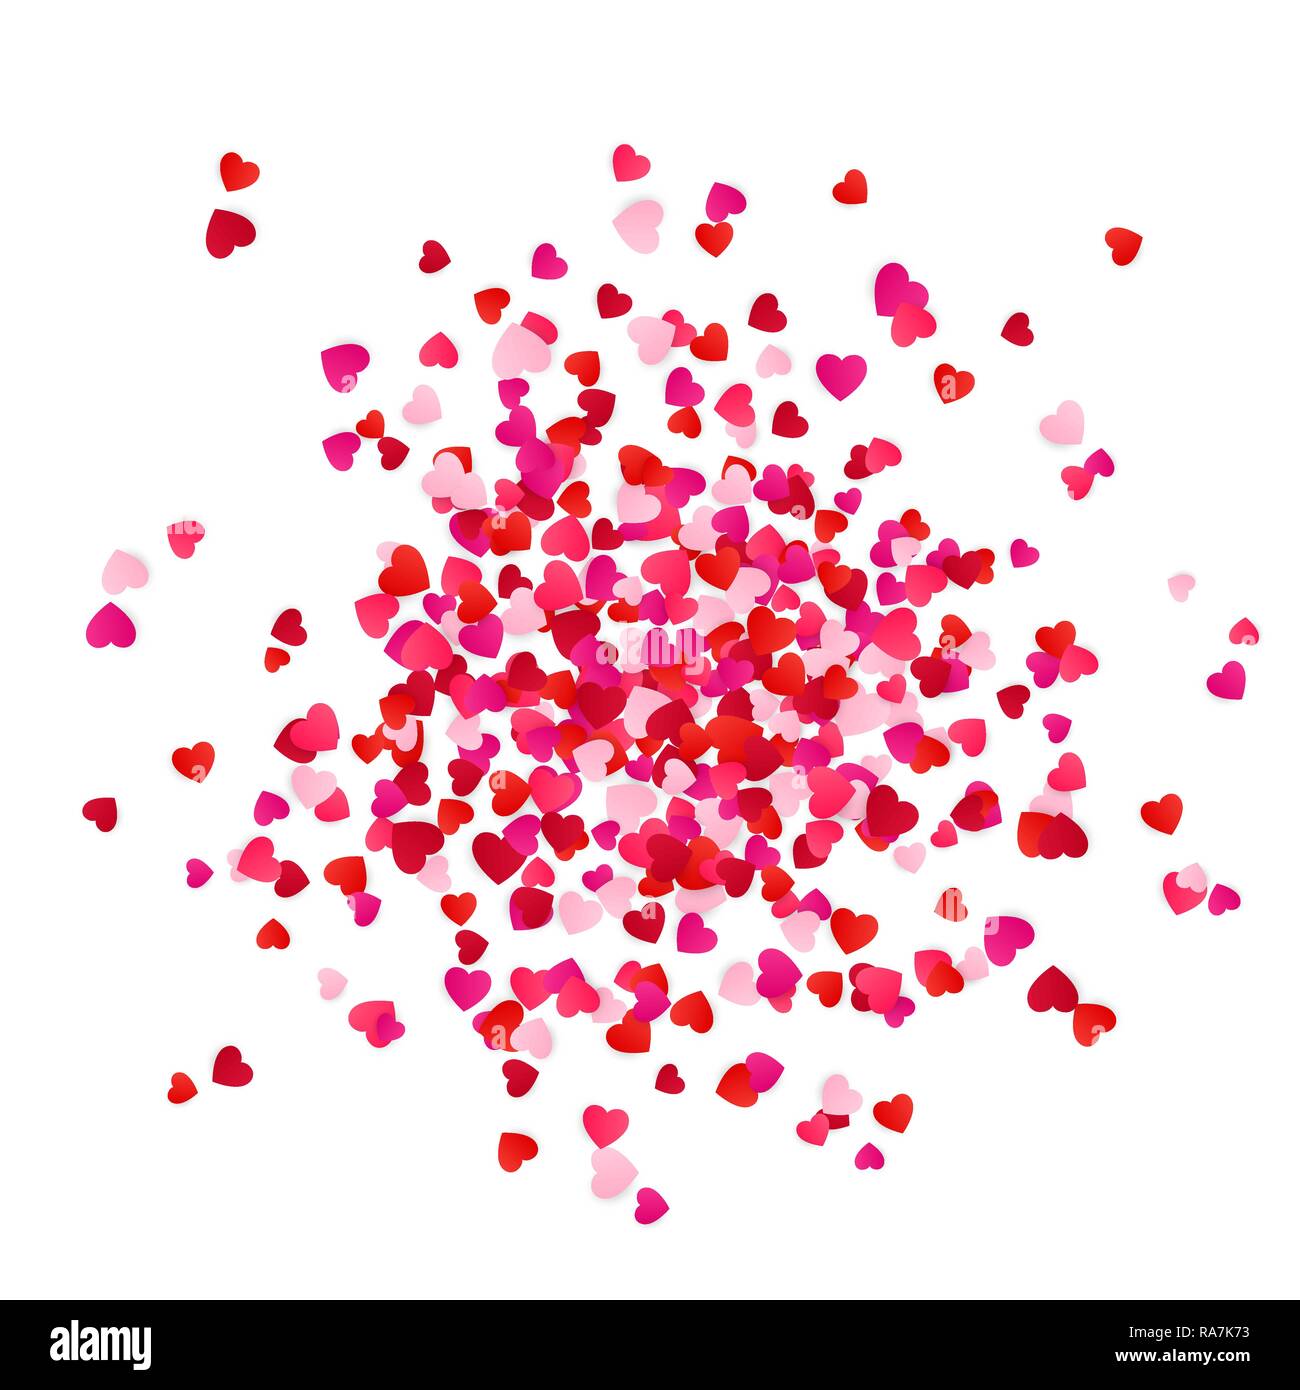 Rouge et Rose coeurs confettis papier nuage isolé sur fond blanc. Maison de vacances romantique élément décoratif. Vector illustration Illustration de Vecteur